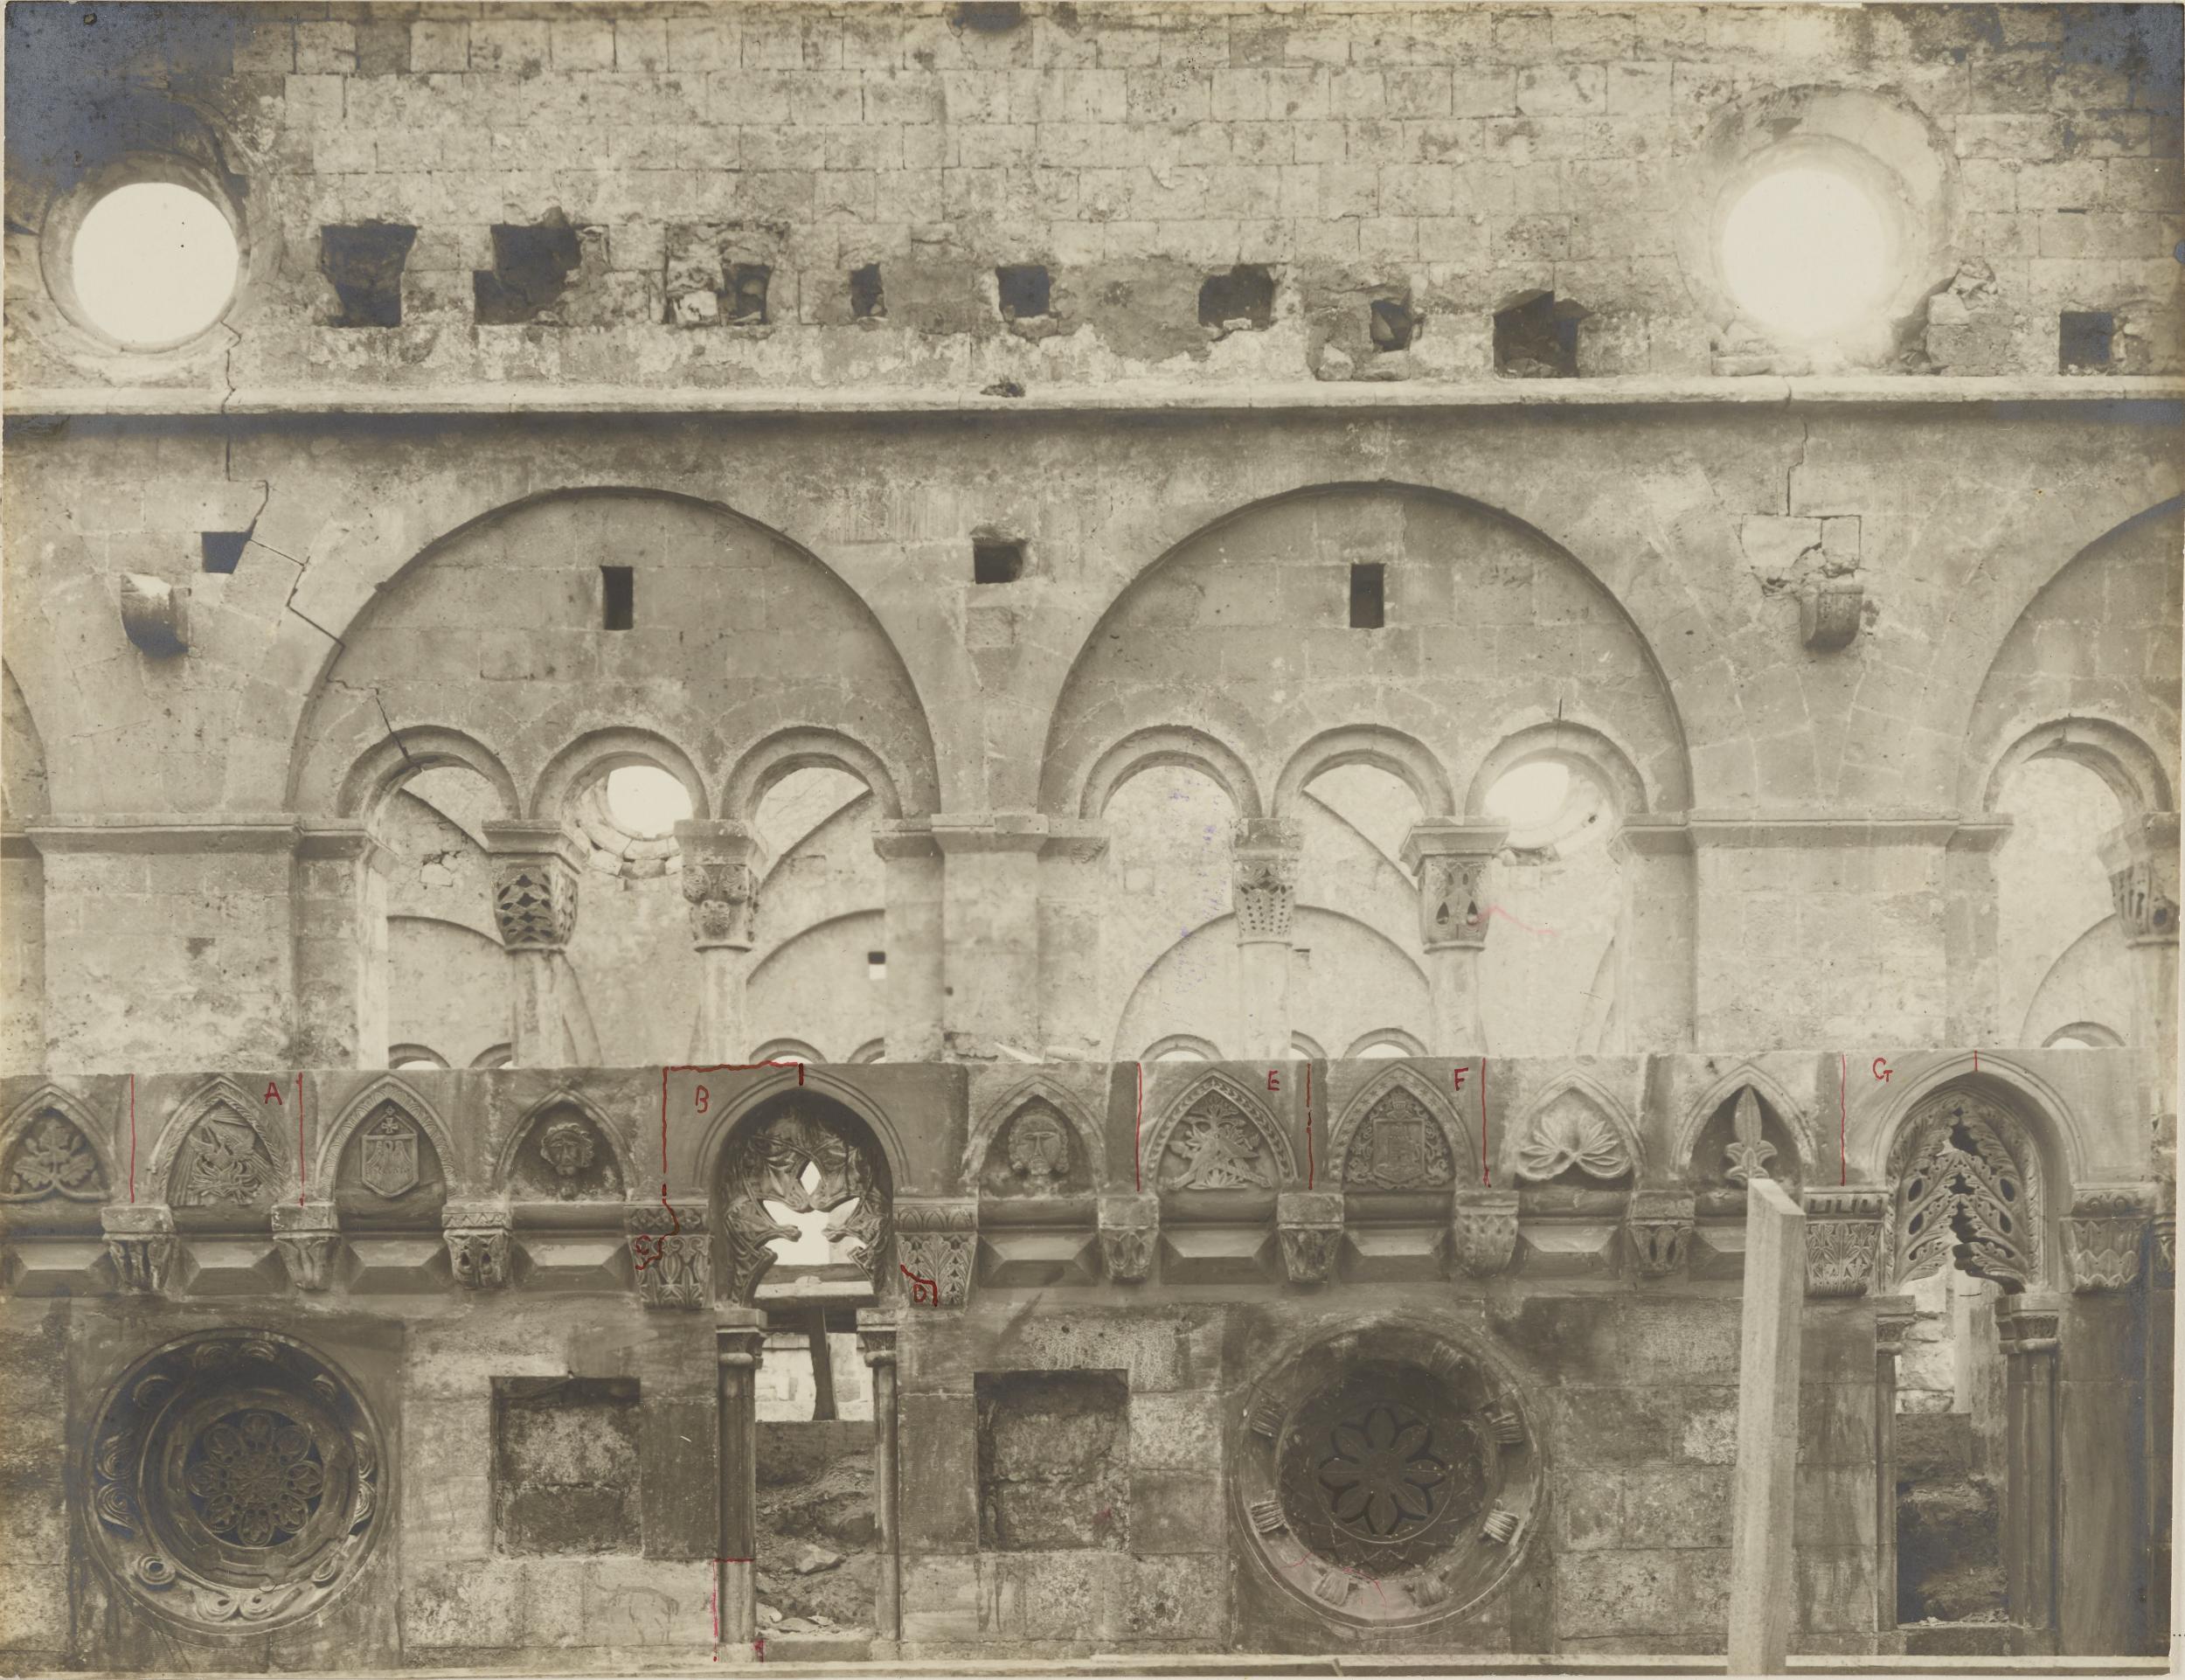 Fotografo non identificato, Conversano - Cattedrale, fiancata durante i restauri del 1912-14, 1901-1925, gelatina ai sali d'argento/carta, MPI155327